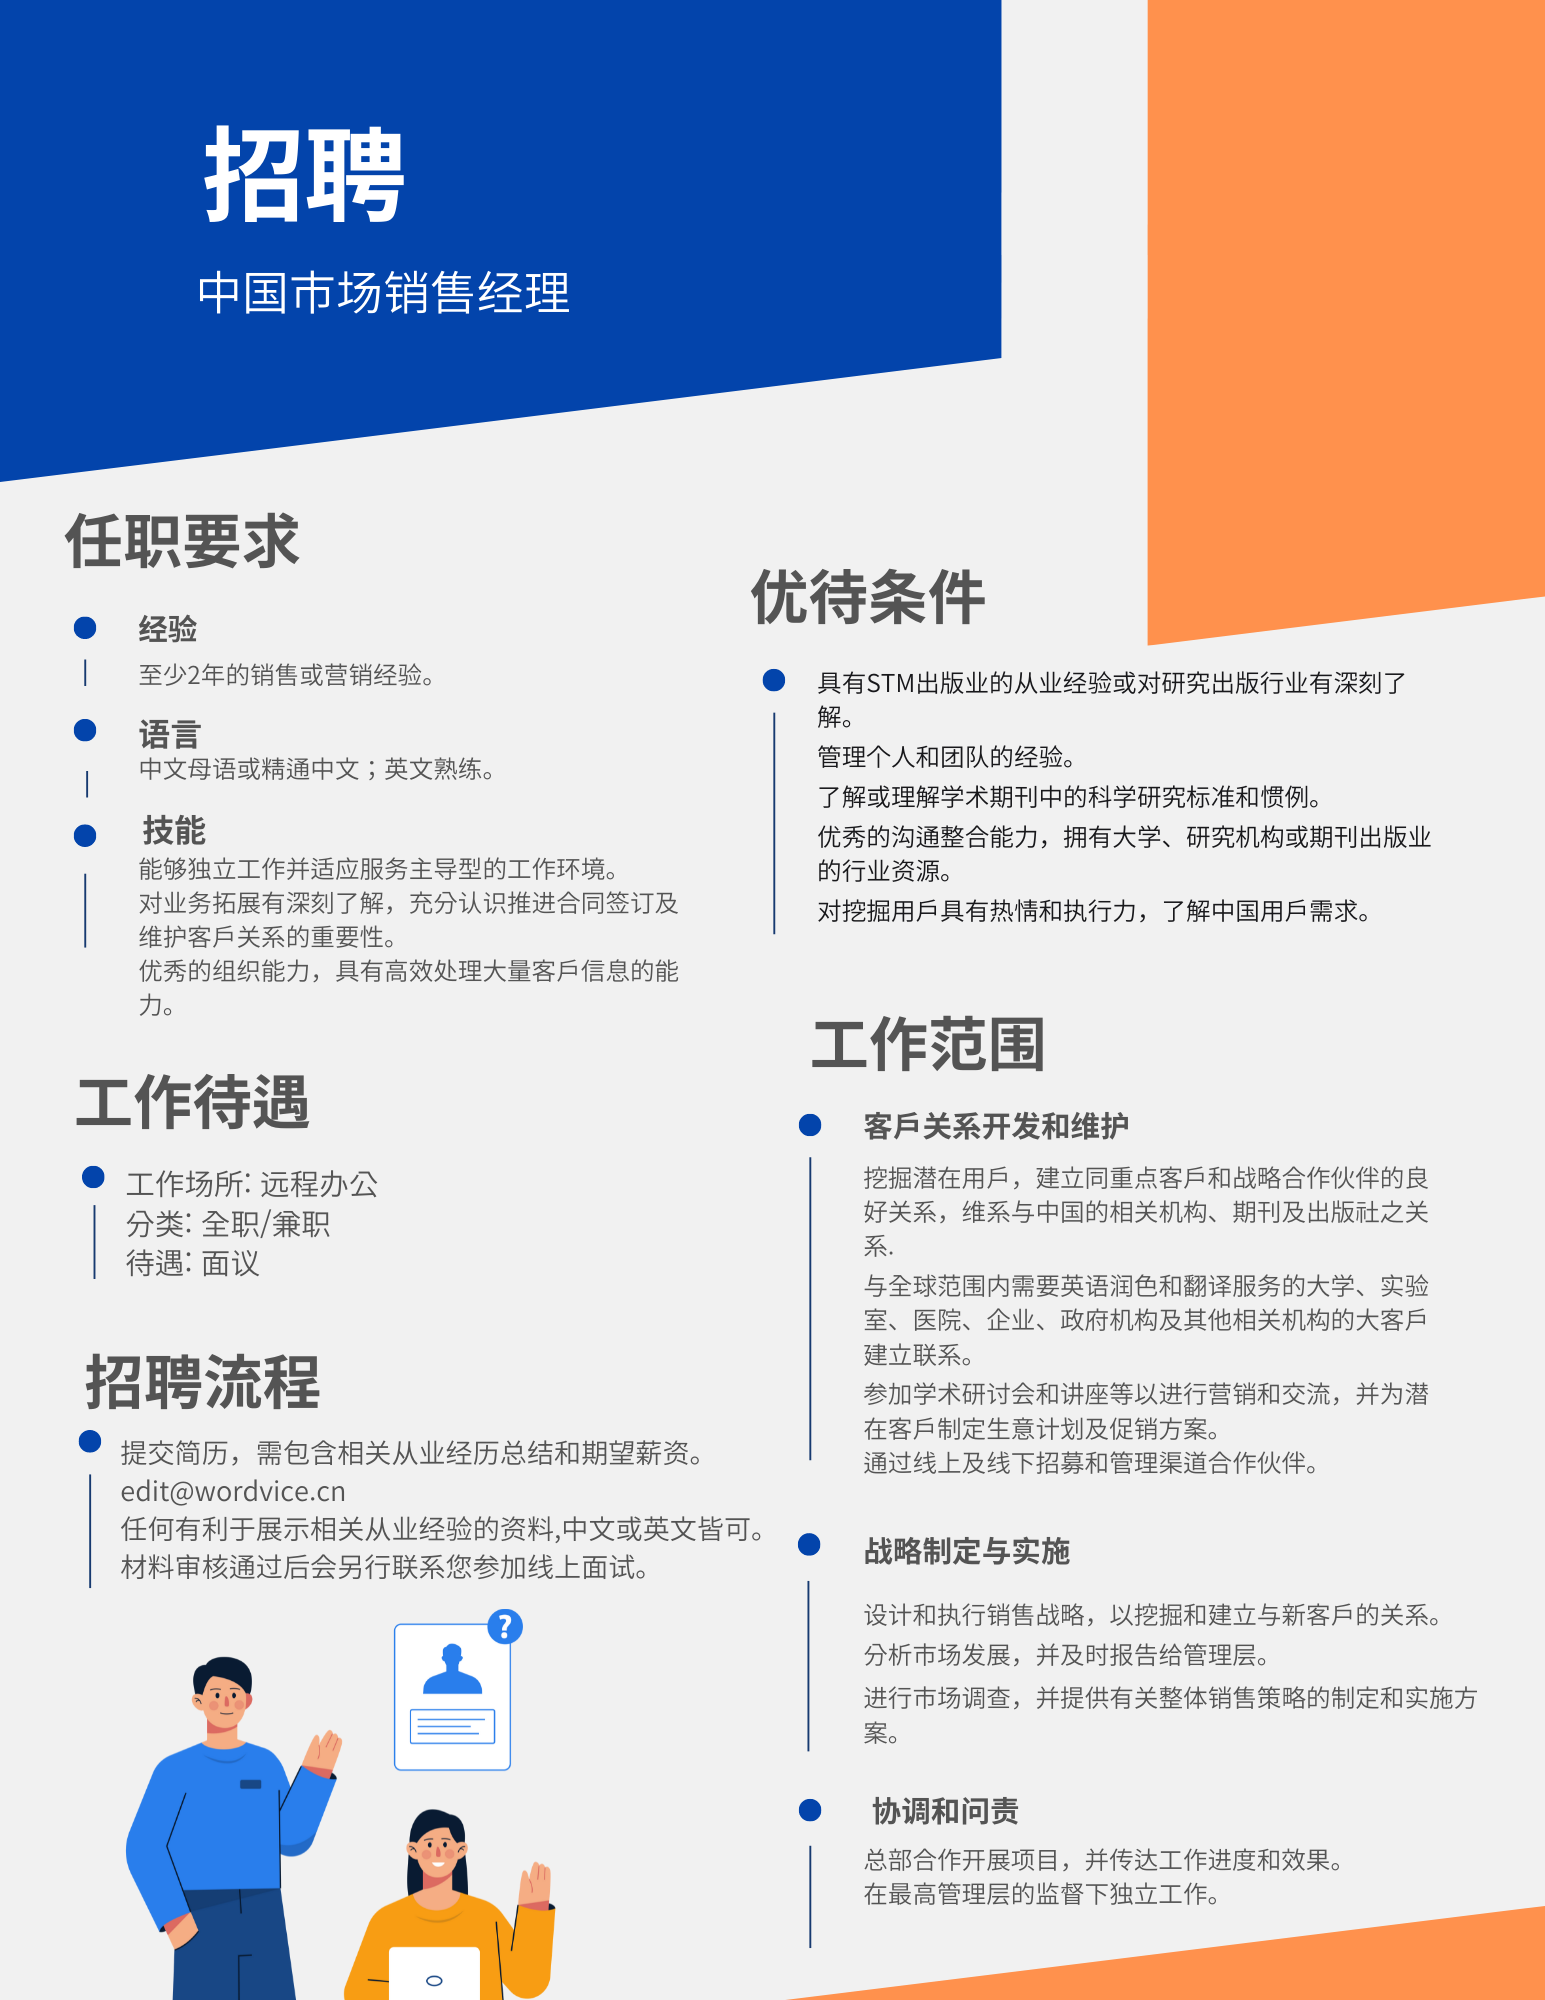 Wordvice China Sales Recruit.png